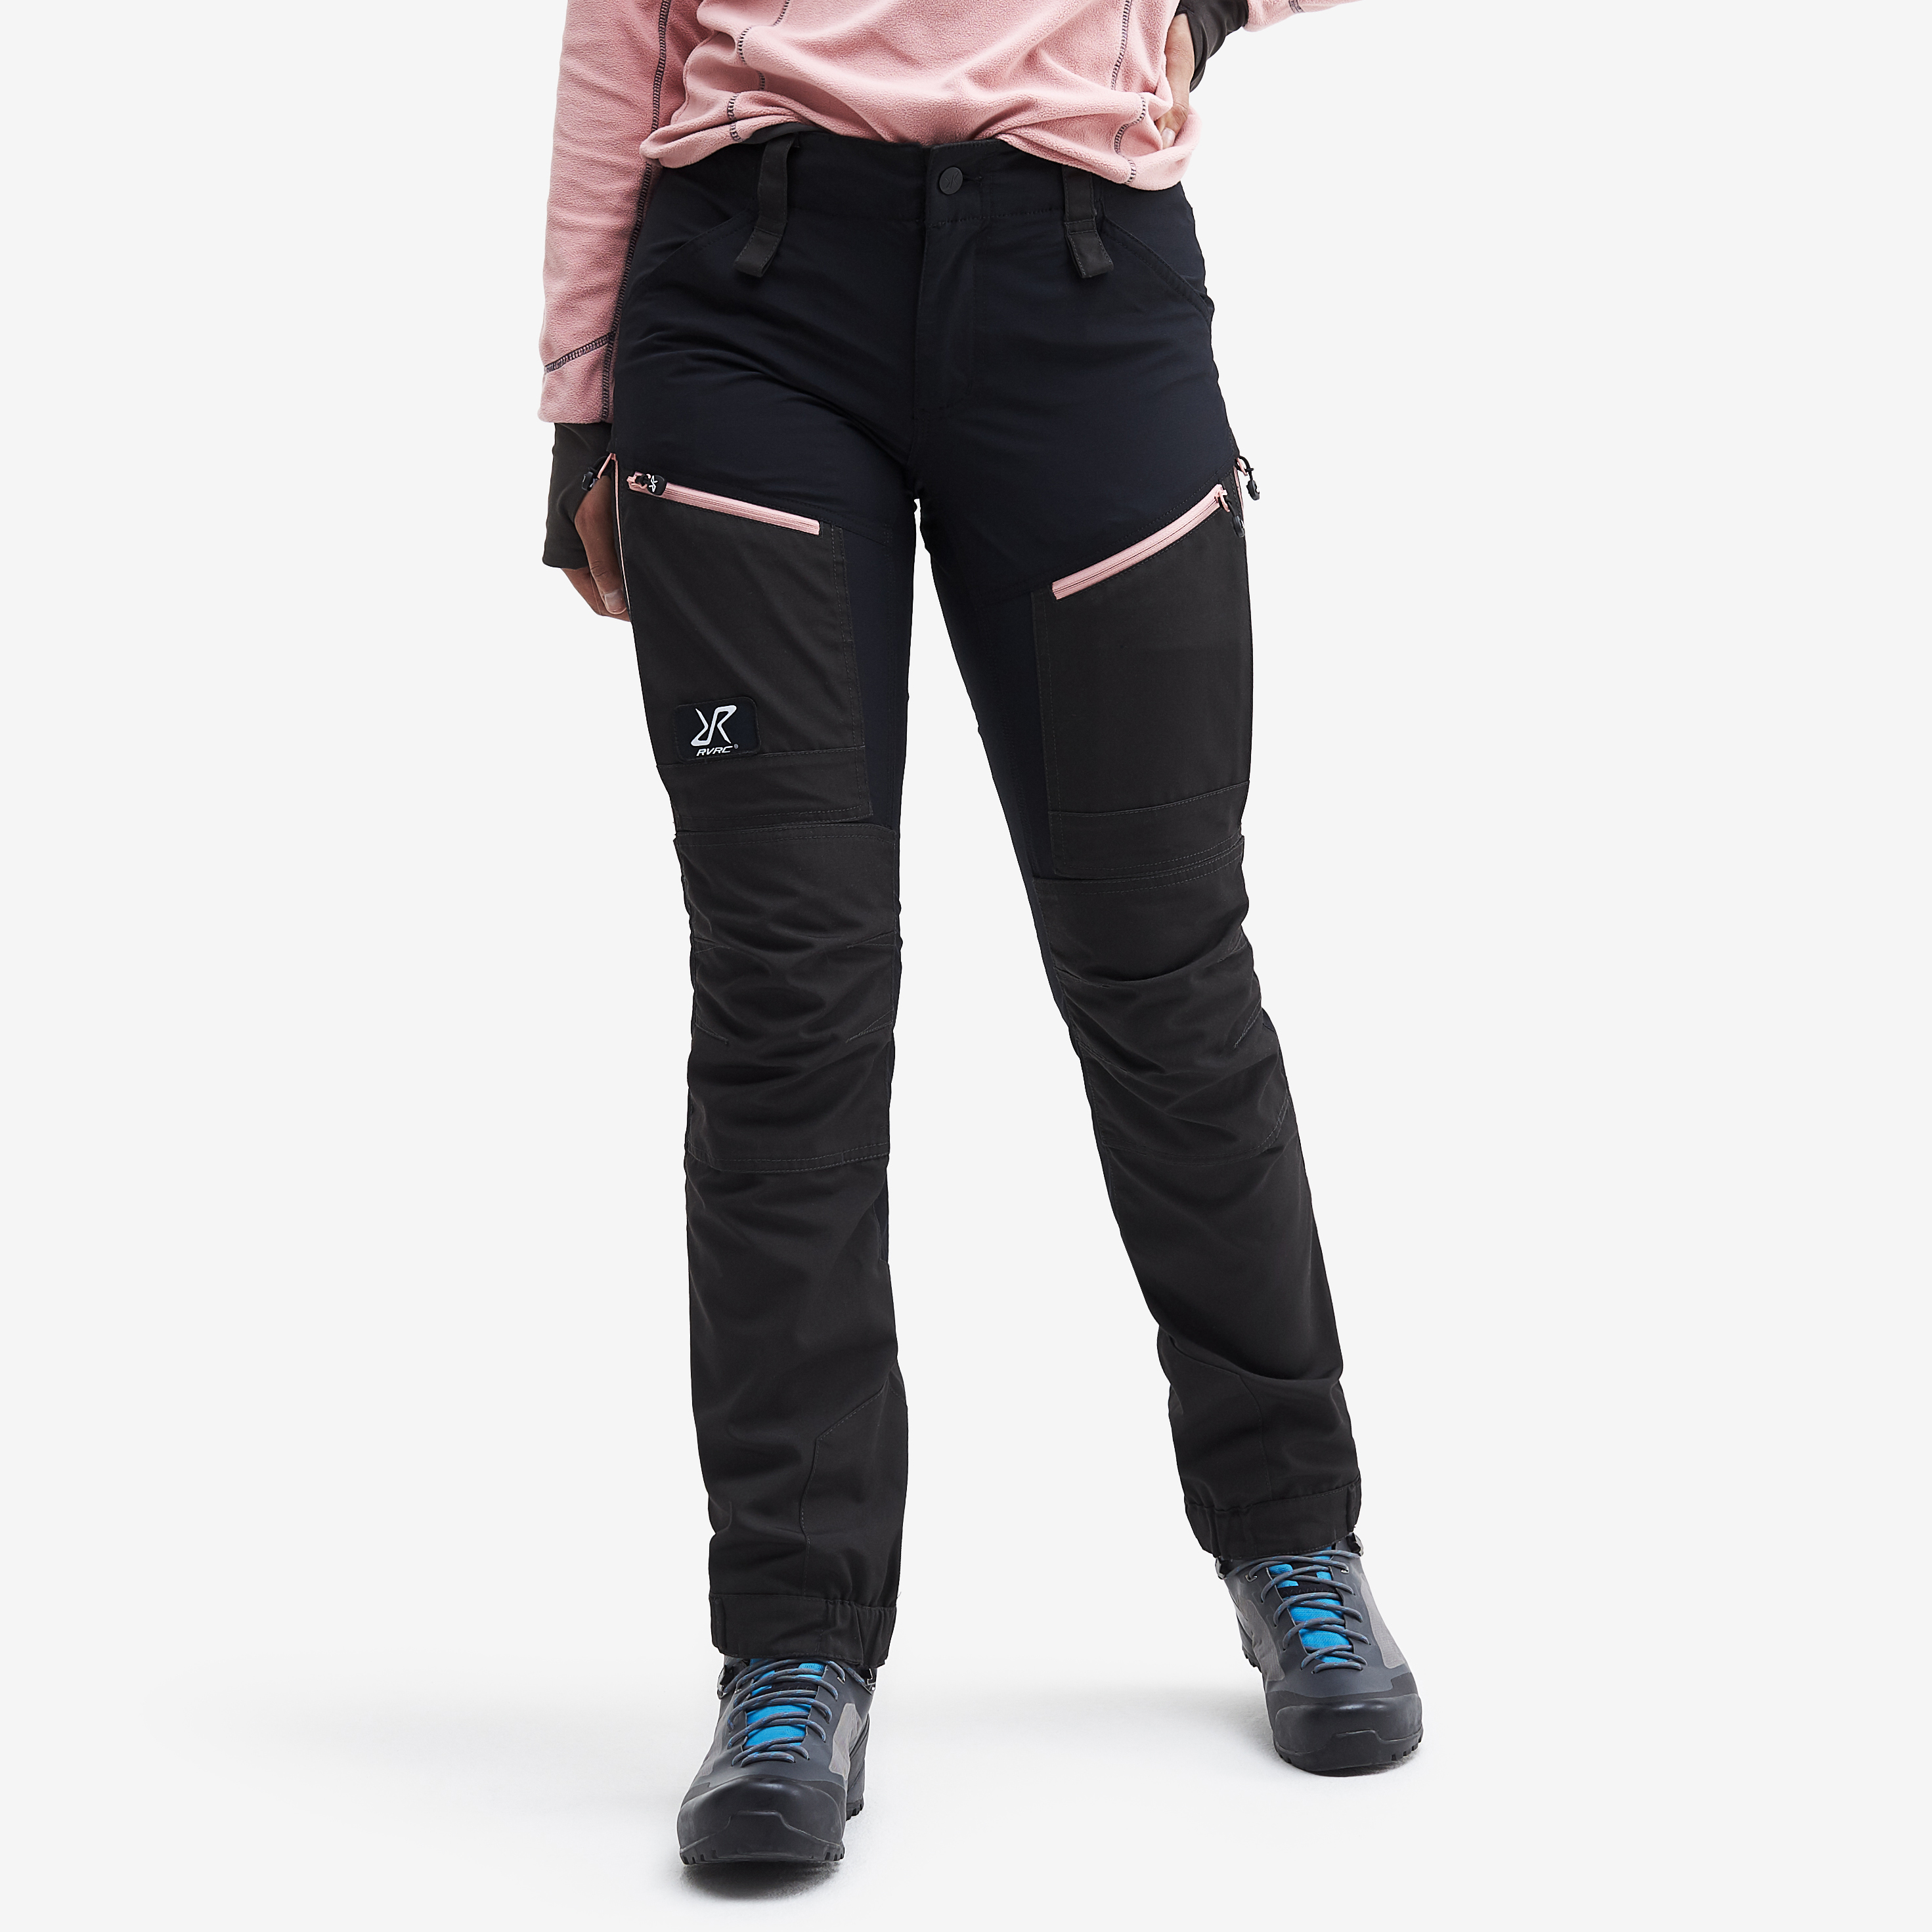 RVRC GP Pro turistické kalhoty pro ženy v černé barvě